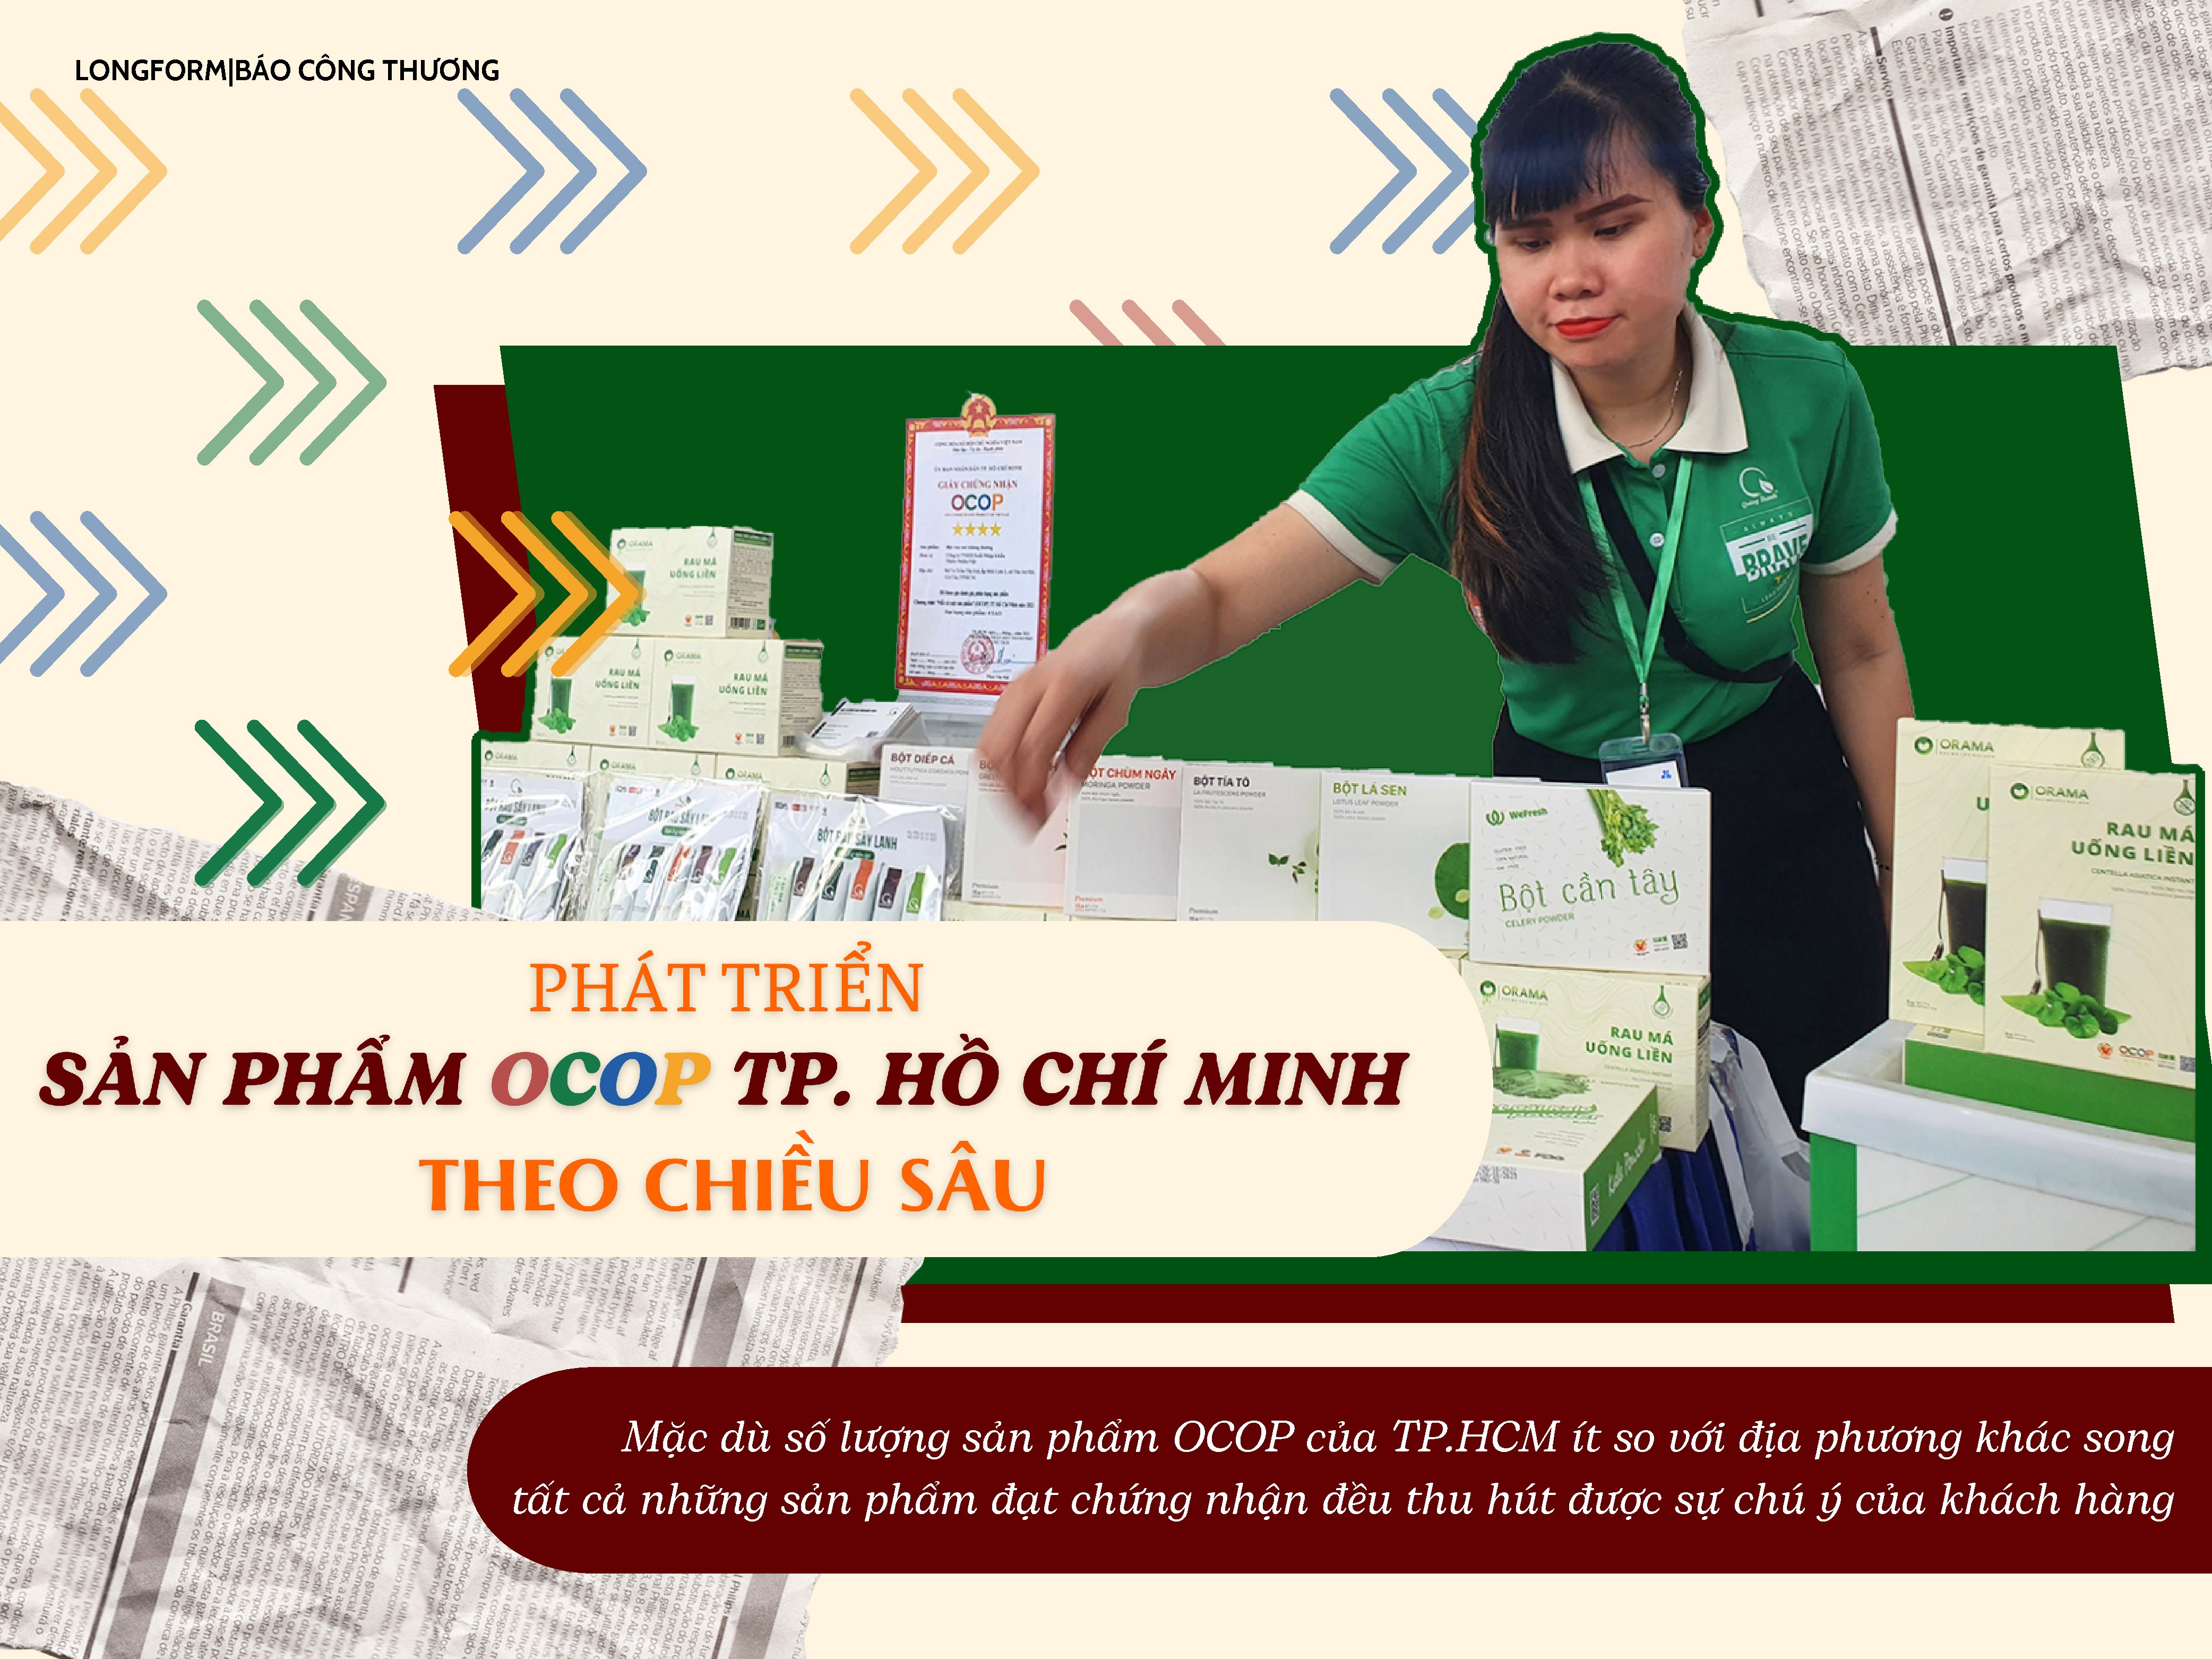 Longform | Phát triển sản phẩm OCOP TP. Hồ Chí Minh theo chiều sâu